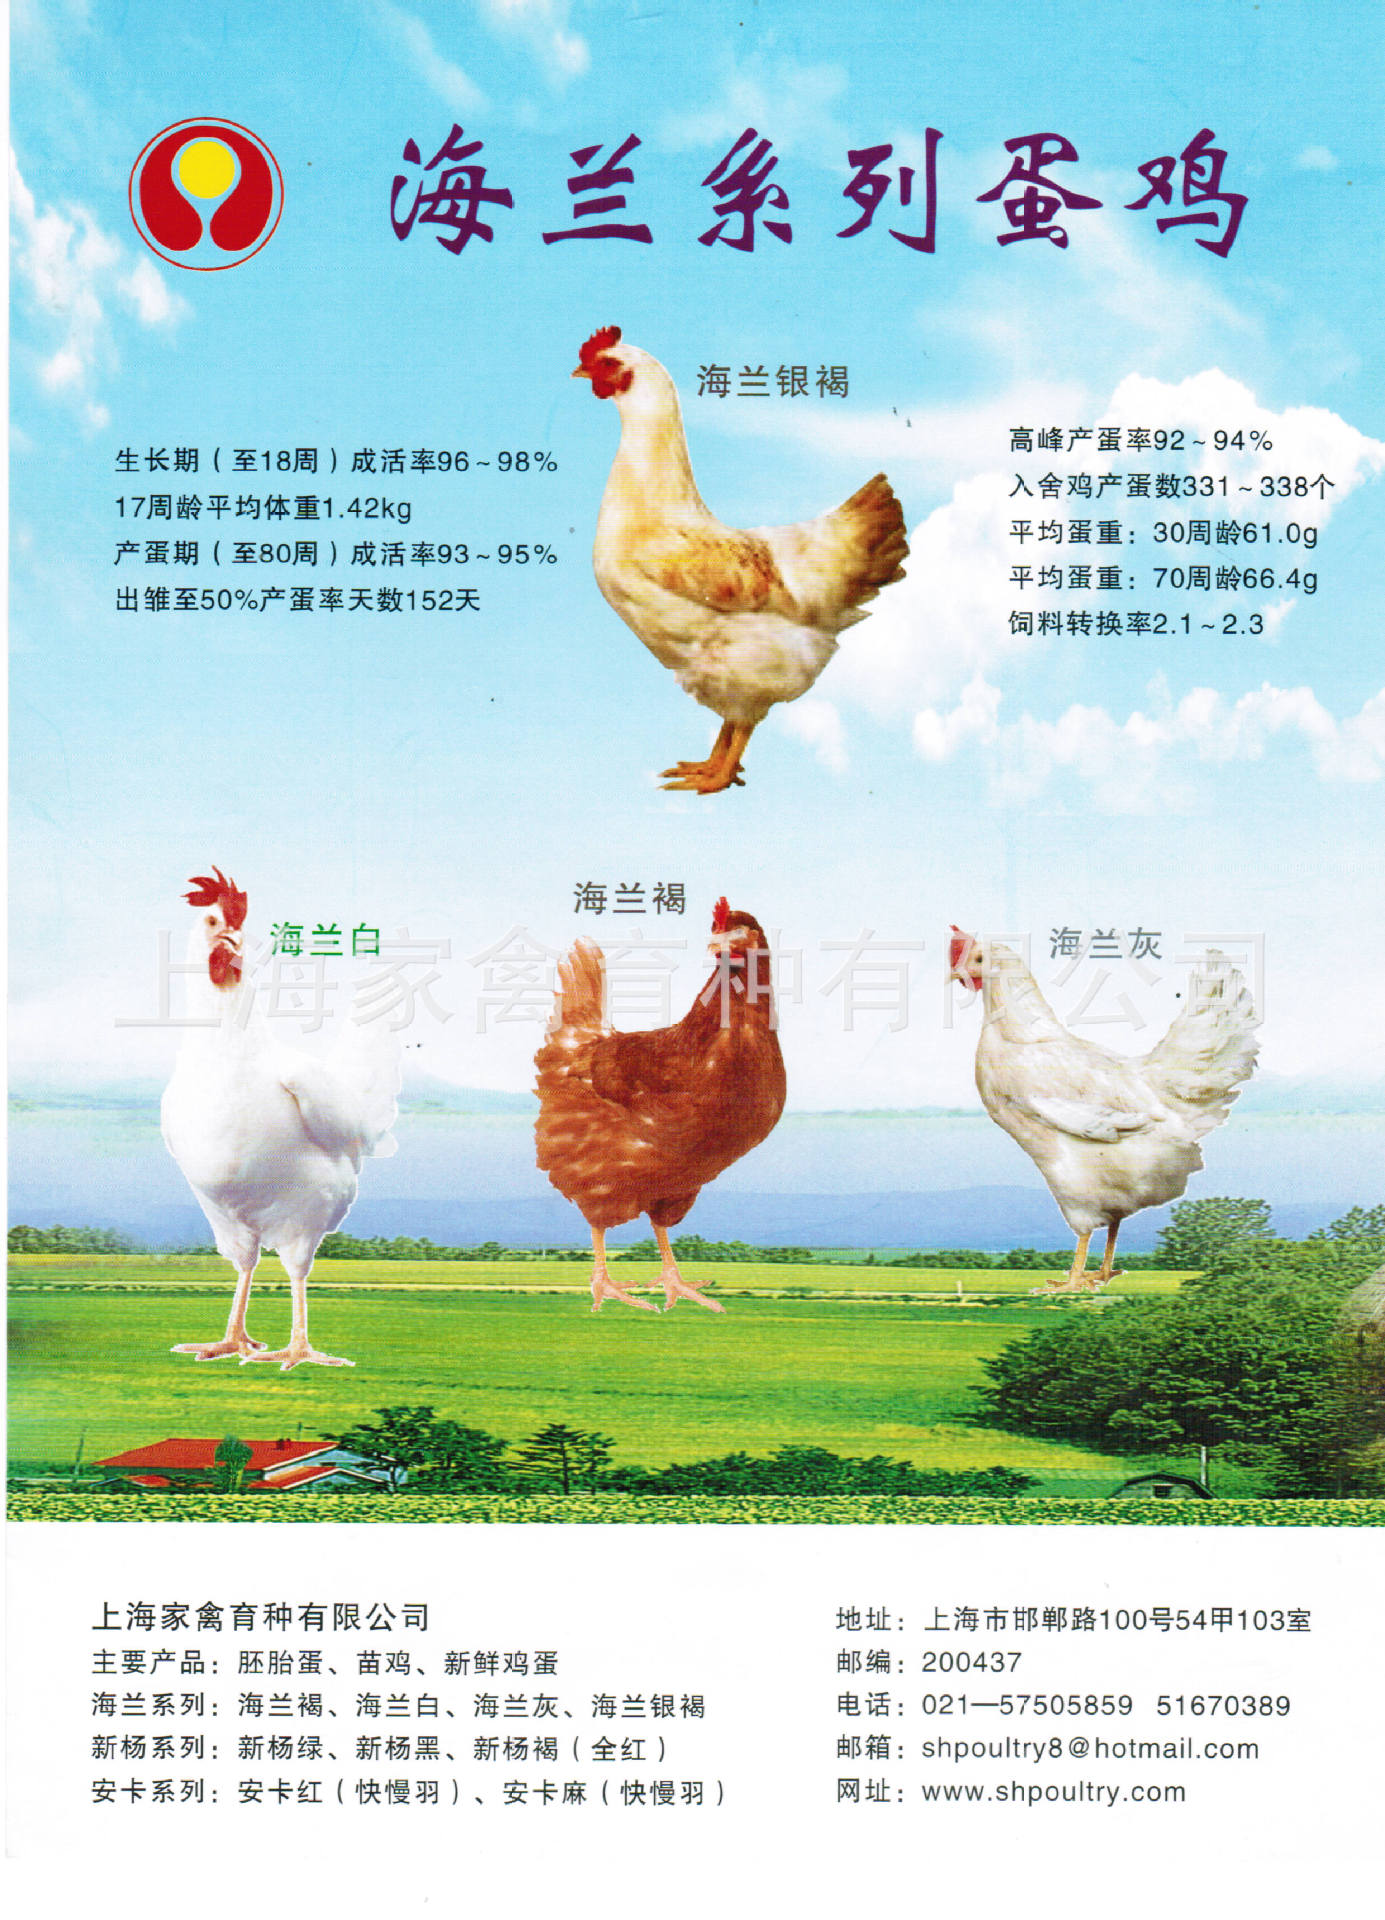 上海家禽 供应鸡苗 商品代 海兰系列鸡苗 海兰银褐 海兰褐/灰鸡苗